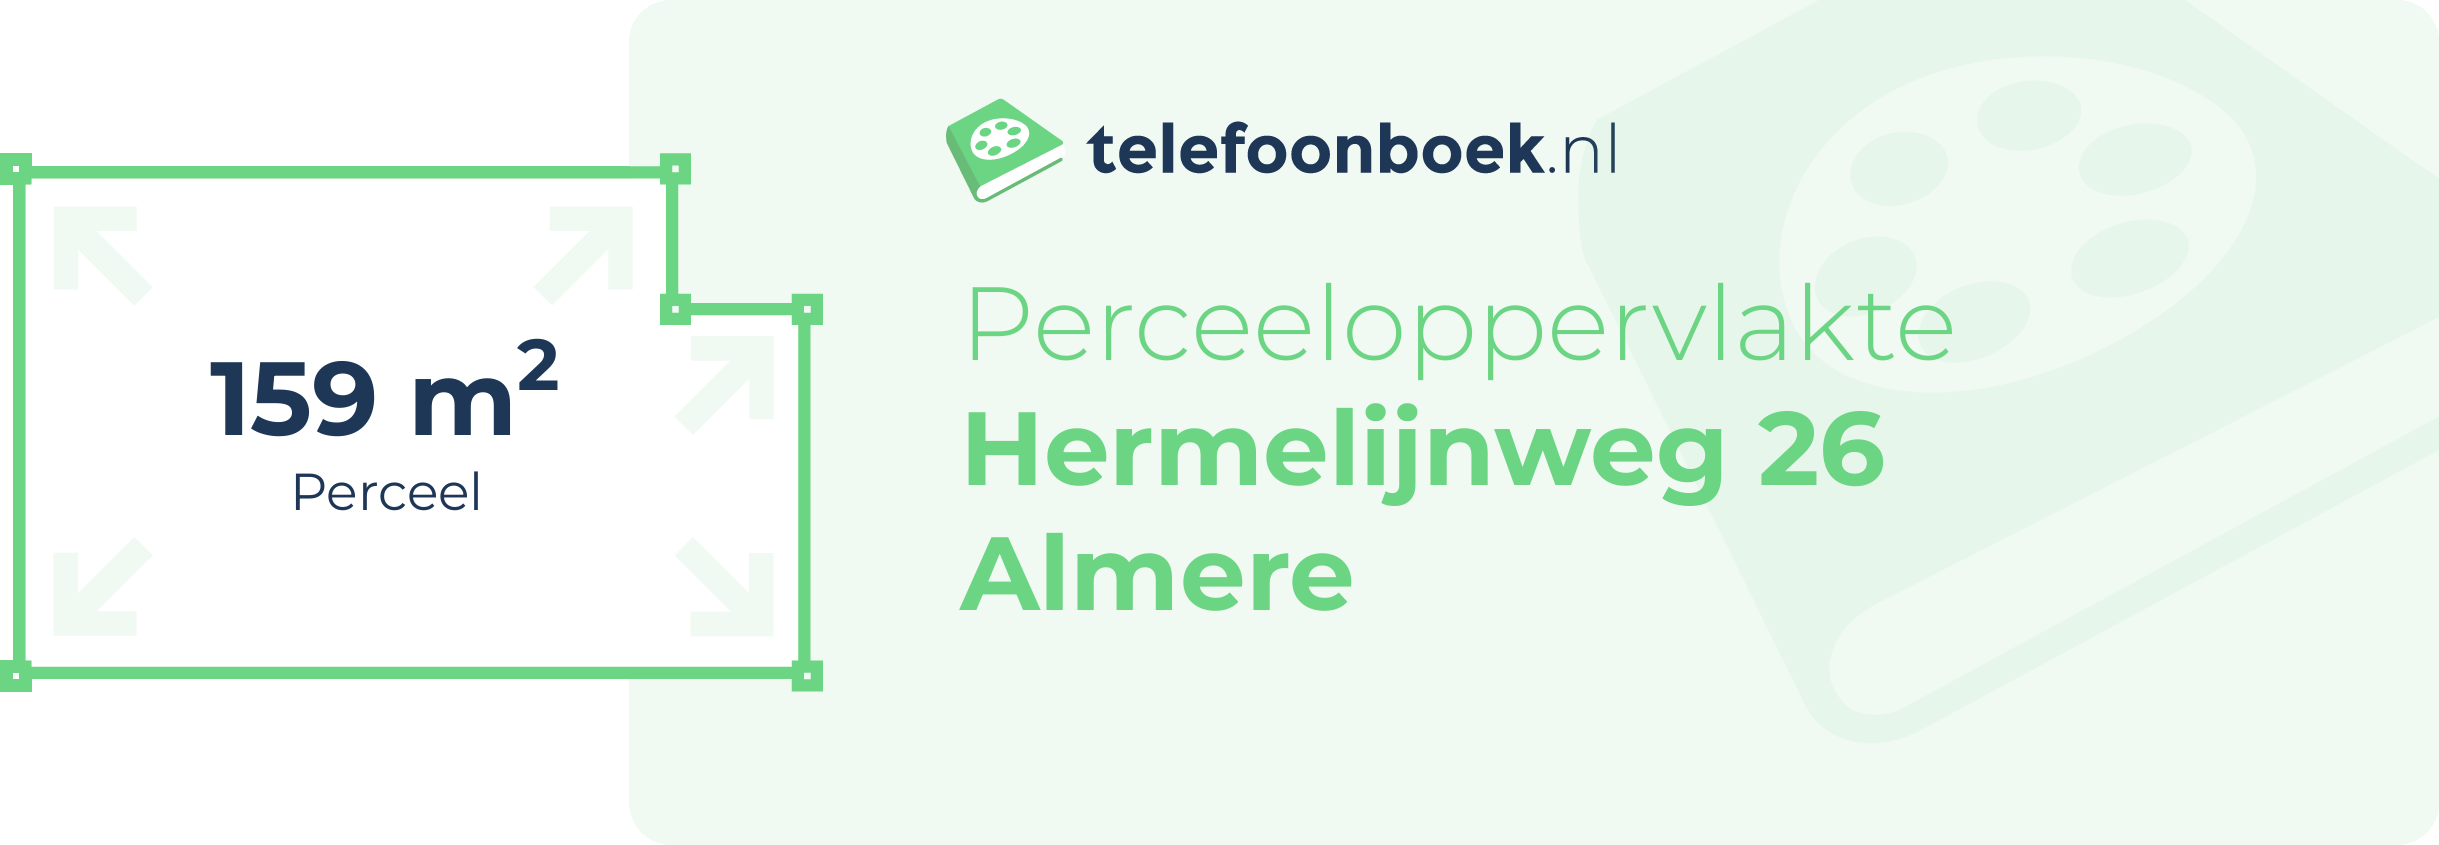 Perceeloppervlakte Hermelijnweg 26 Almere